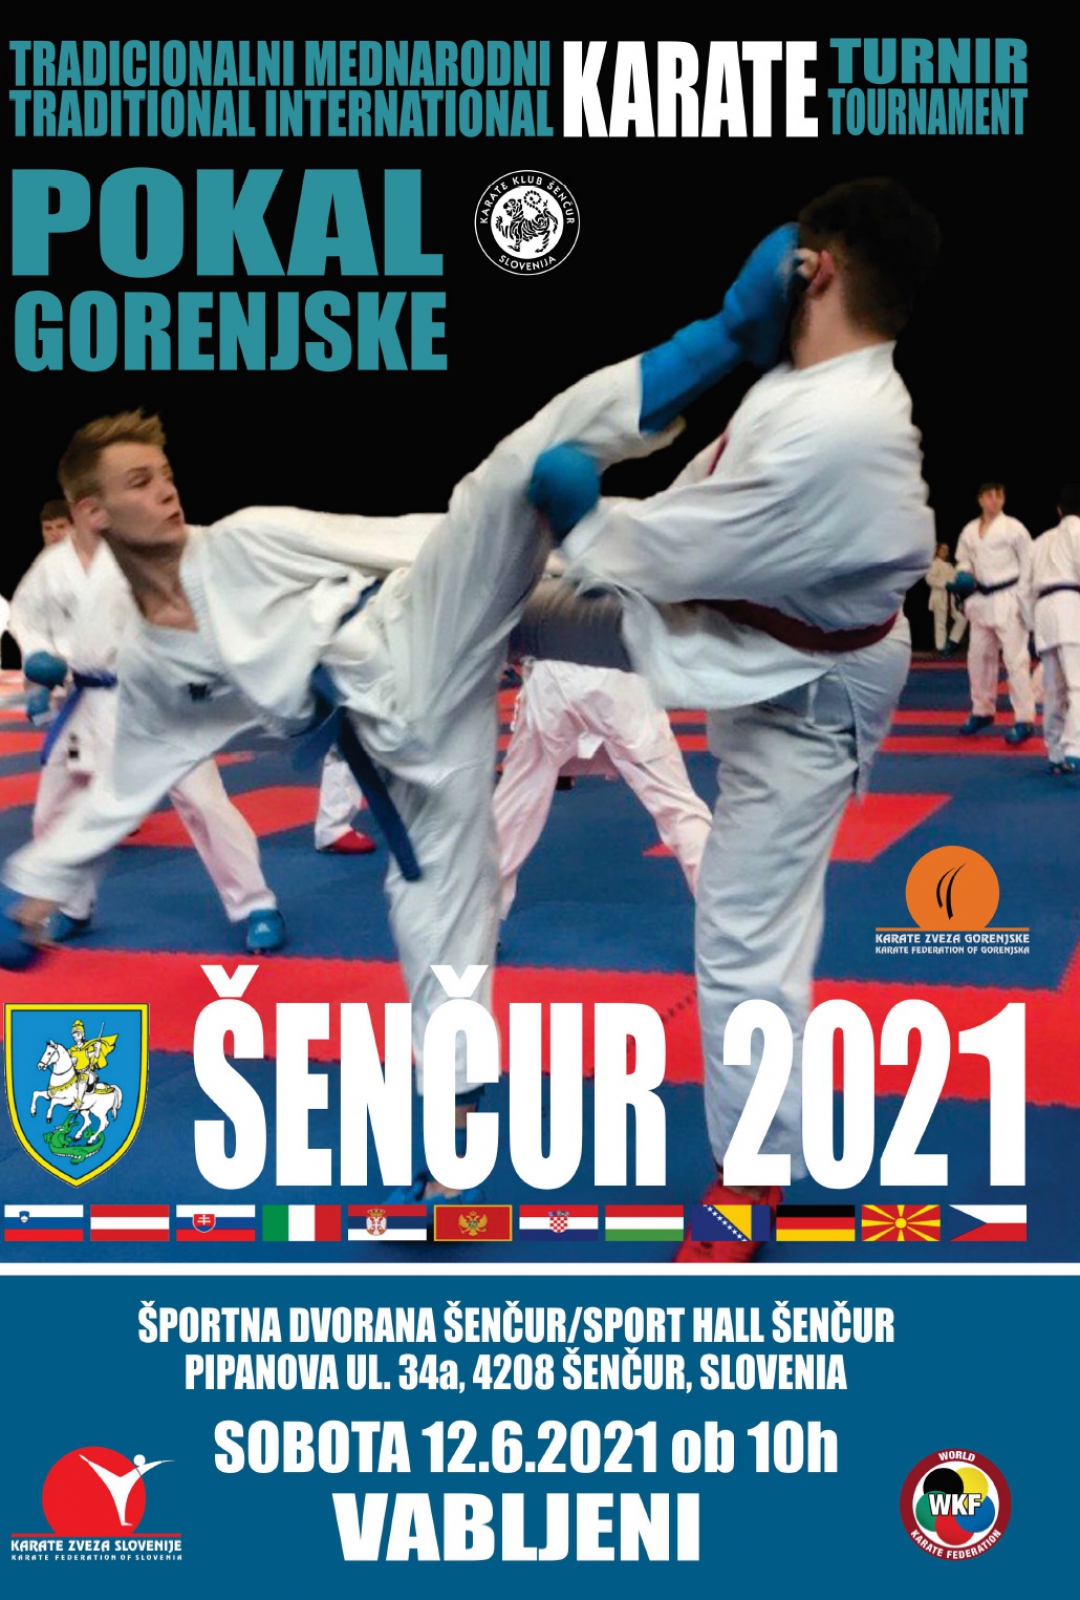 European Championships Karate 2021 Sportdata : Set Online Karate Wsf